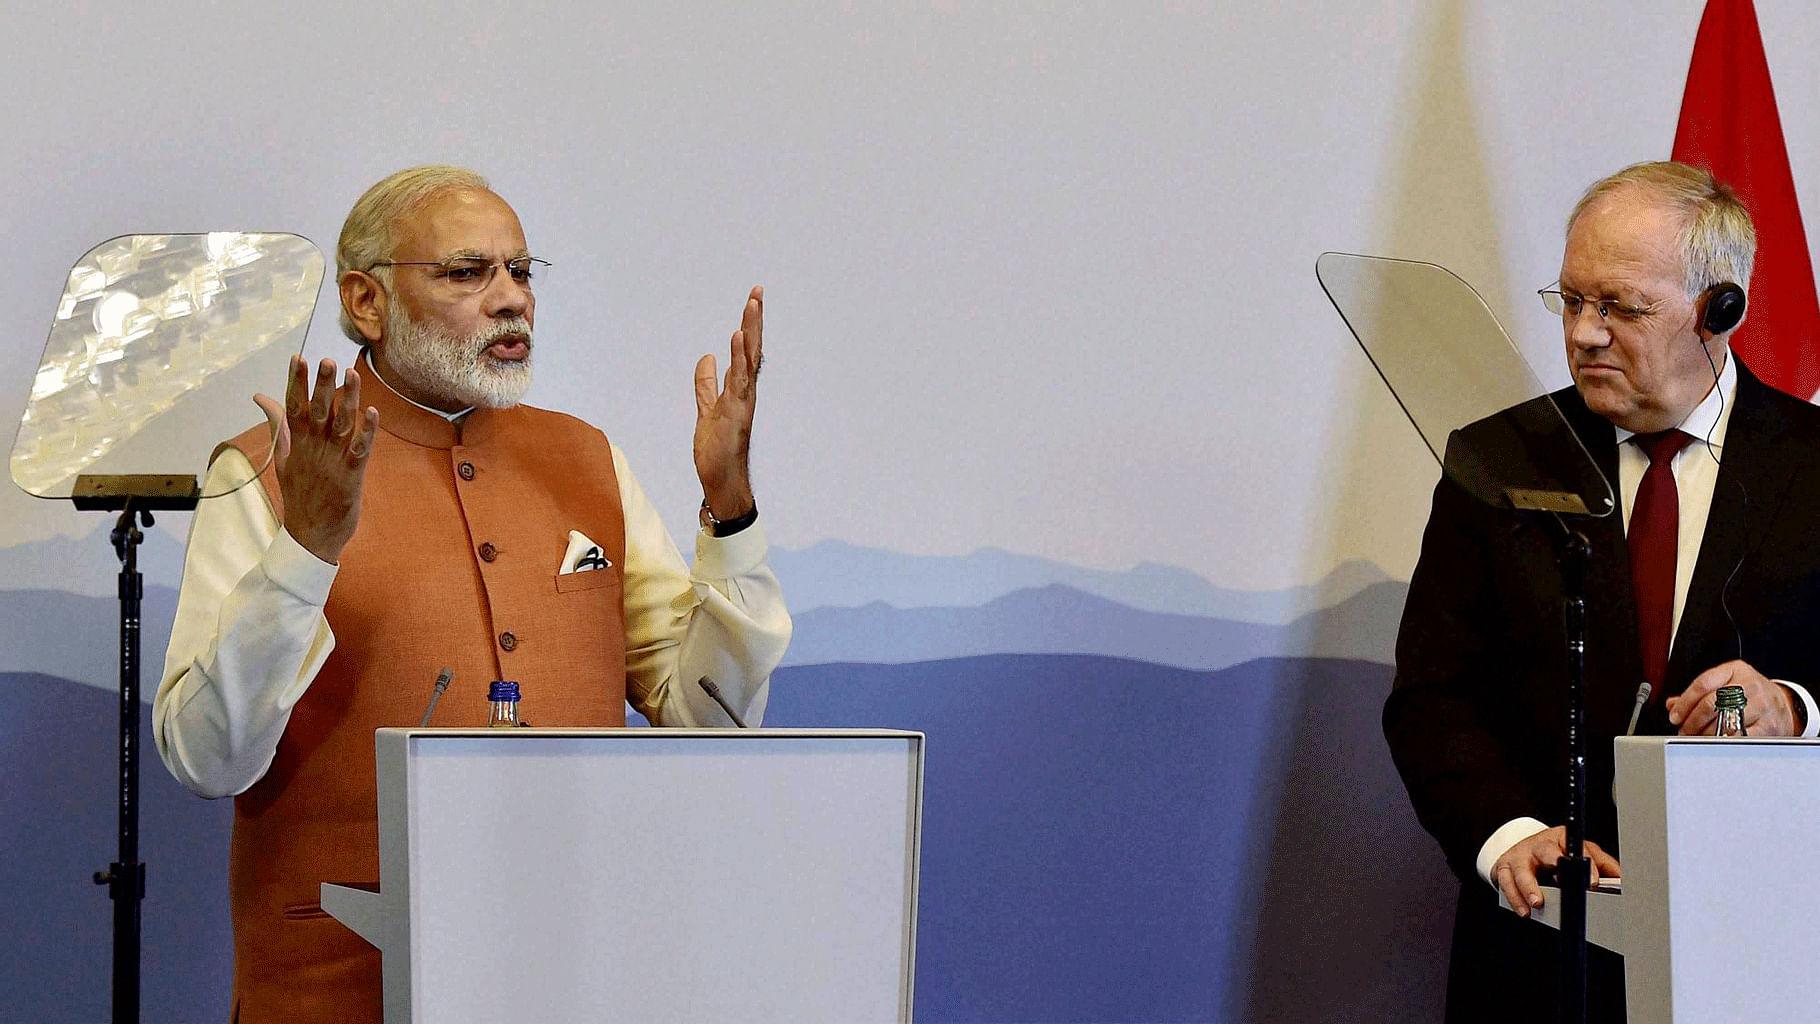 

Prime Minister Narendra Modi with  Switzerland’s President Johann Schneider-Ammann during their press statement in Geneva, Switzerland. (Photo: PTI)